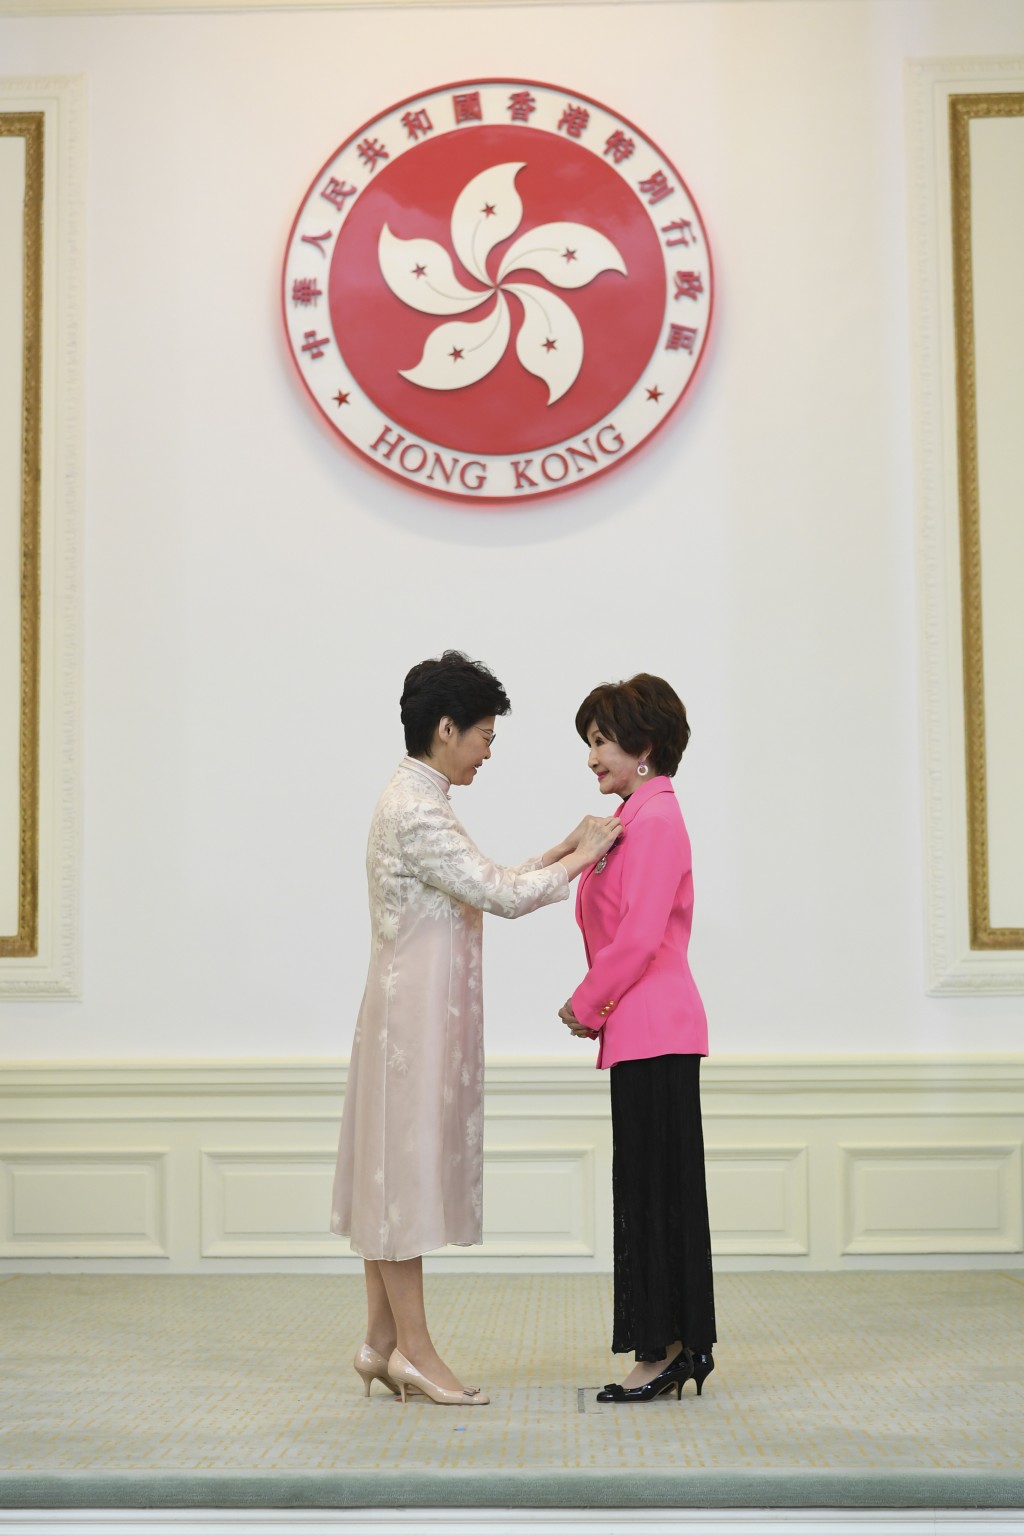 郑明明2019年获颁授银紫荆星章。